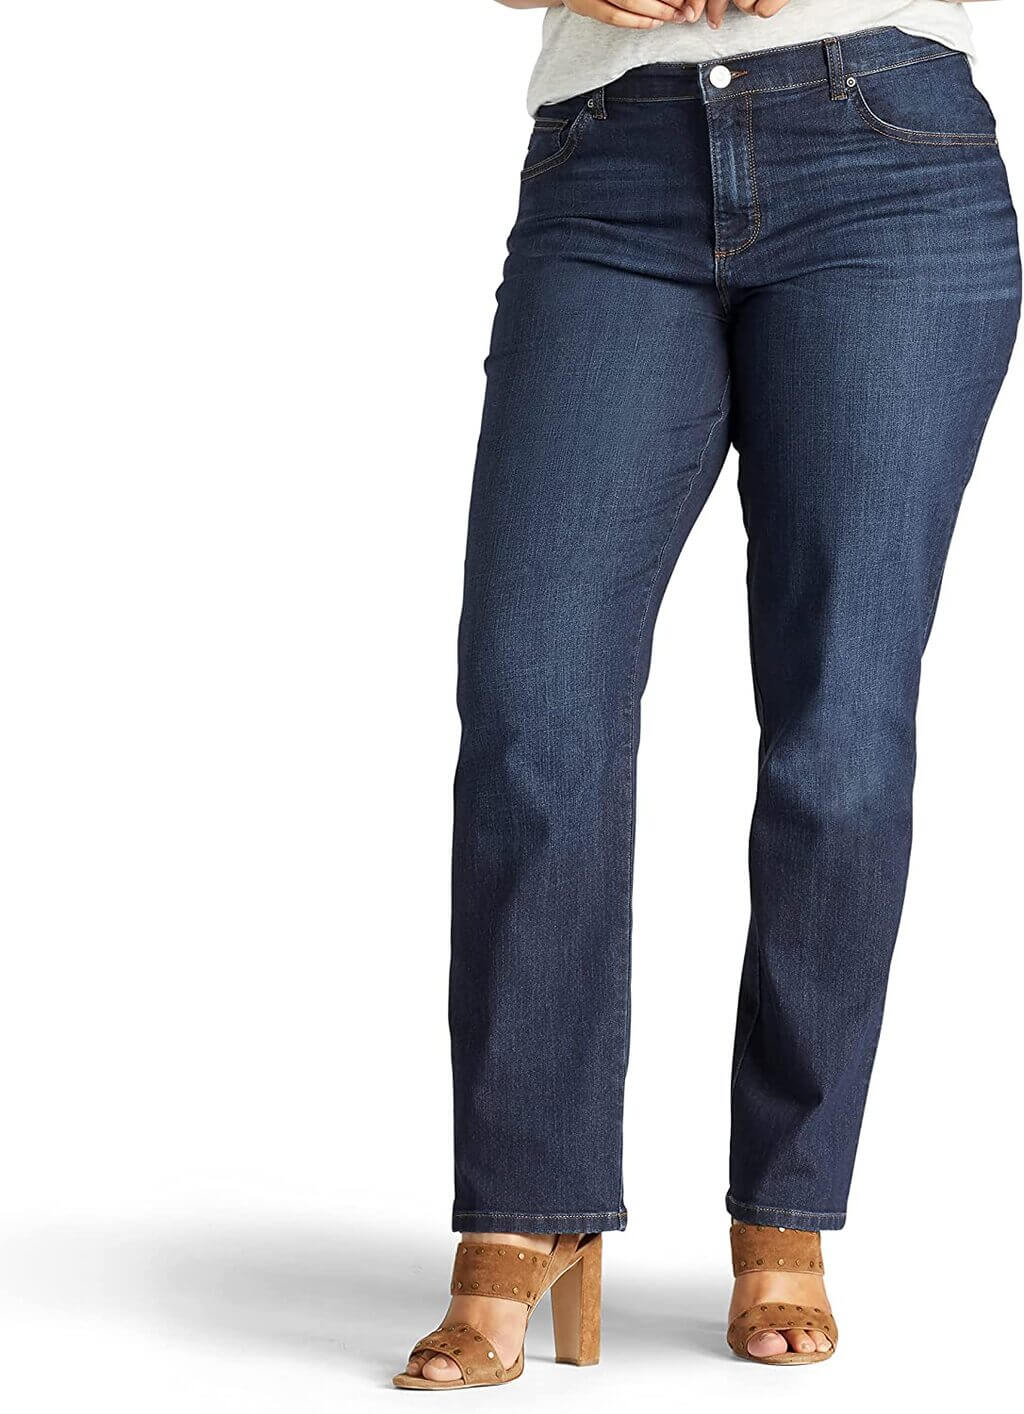 wide leg jeans women